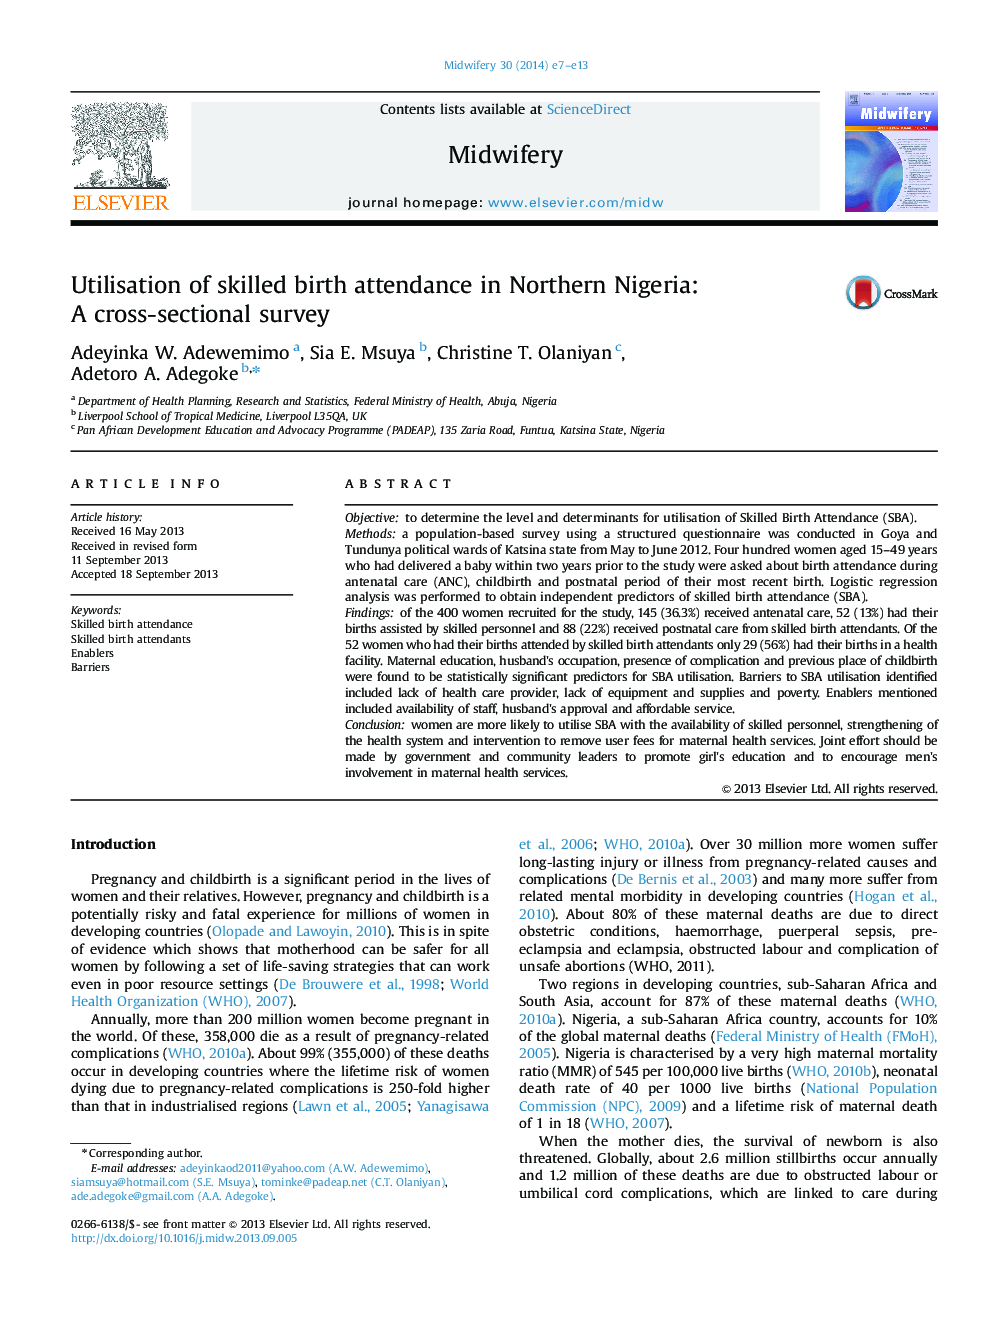 استفاده از حضور مامای ماهر در شمال نیجریه: یک بررسی مقطعی